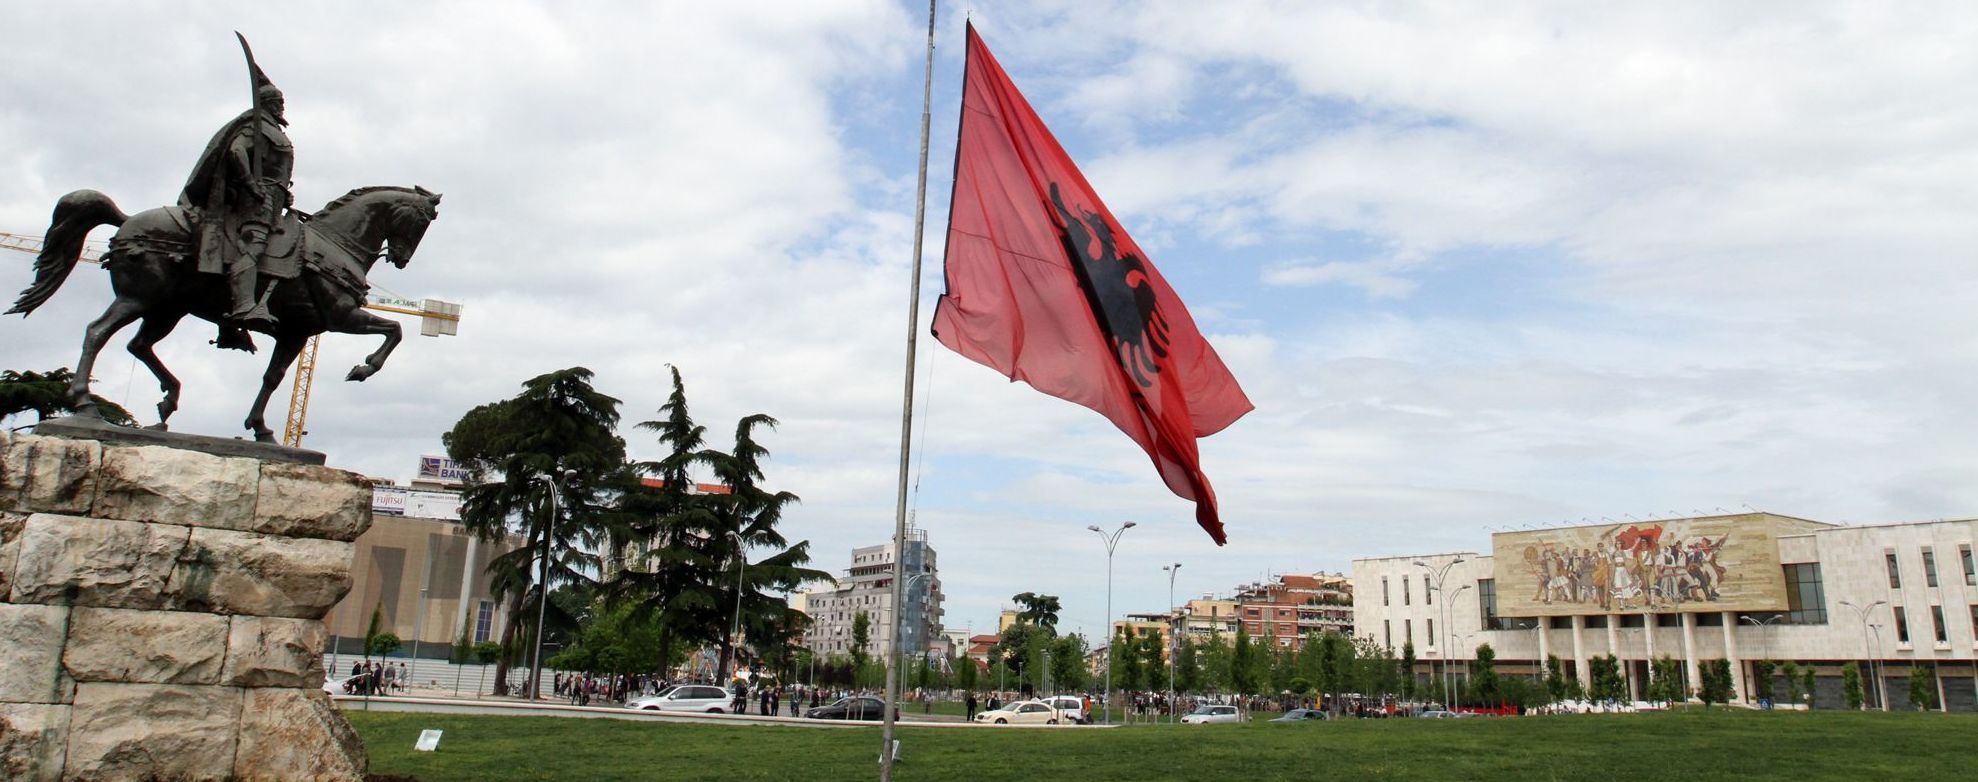 Нове покарання: в Албанії за порушення правил коронавірусного карантину можуть ув'язнити на 8 років